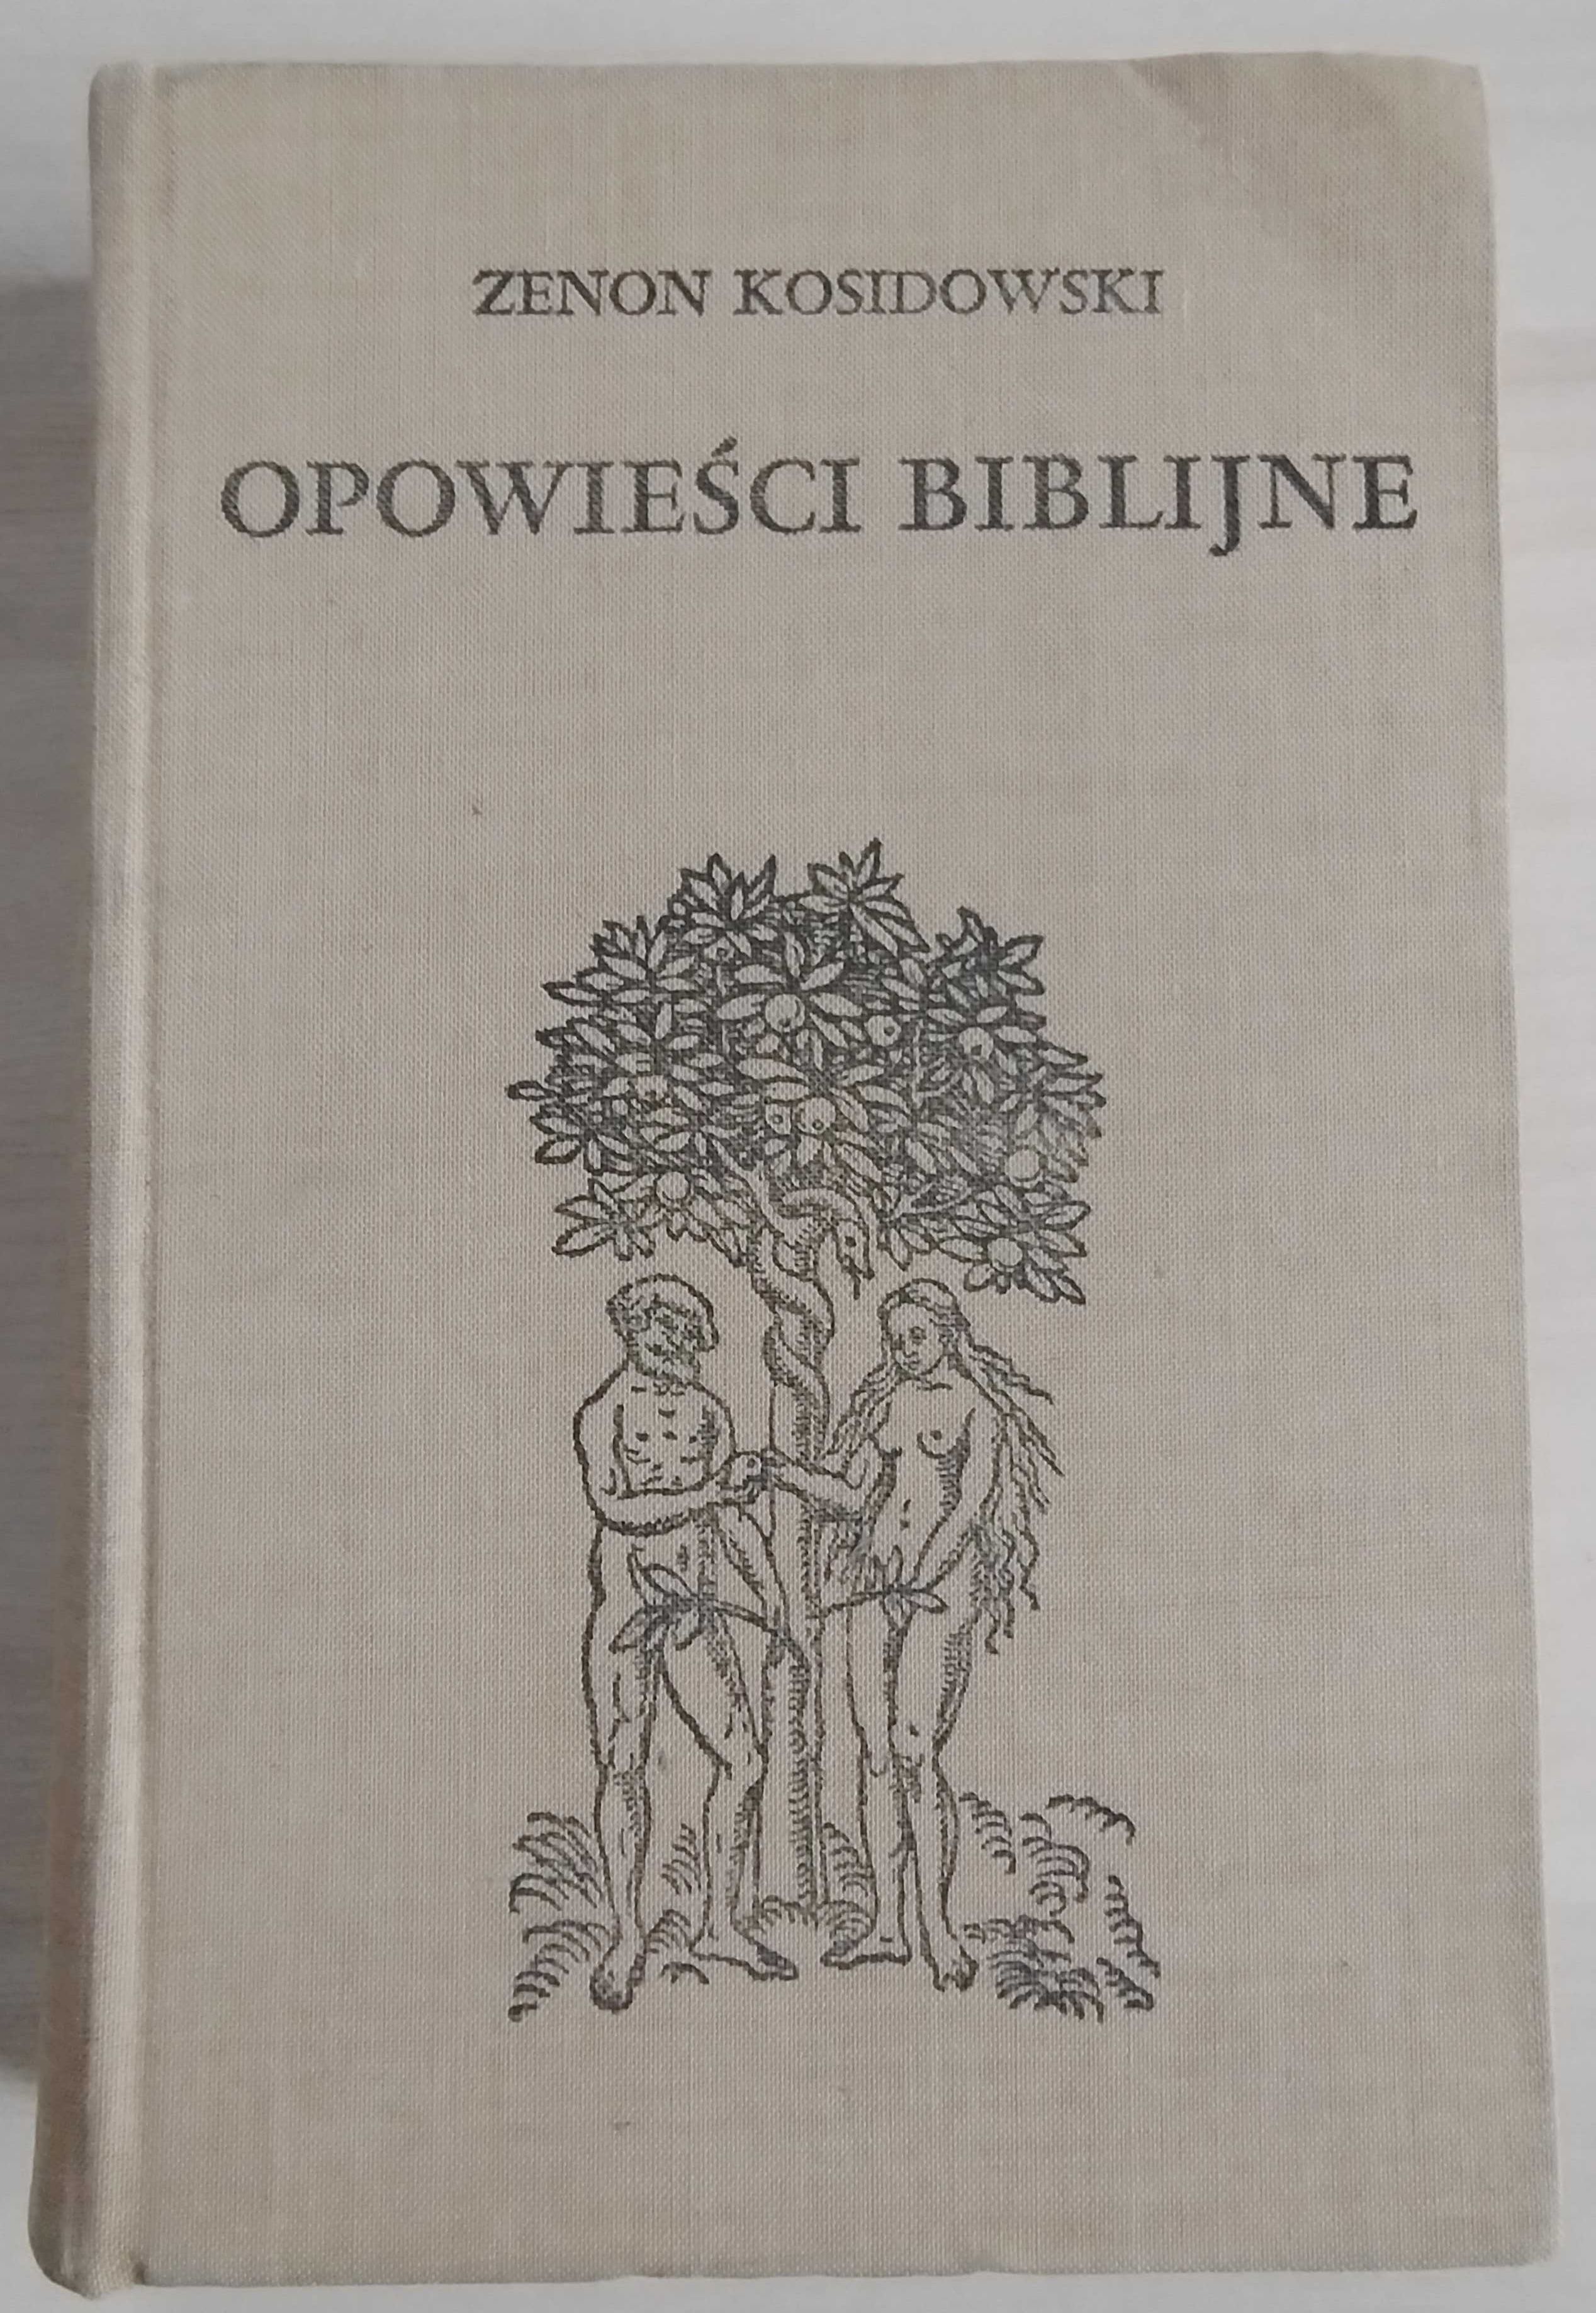 Opowieści Biblijne - Zenon Kosidowski, 1972 rok